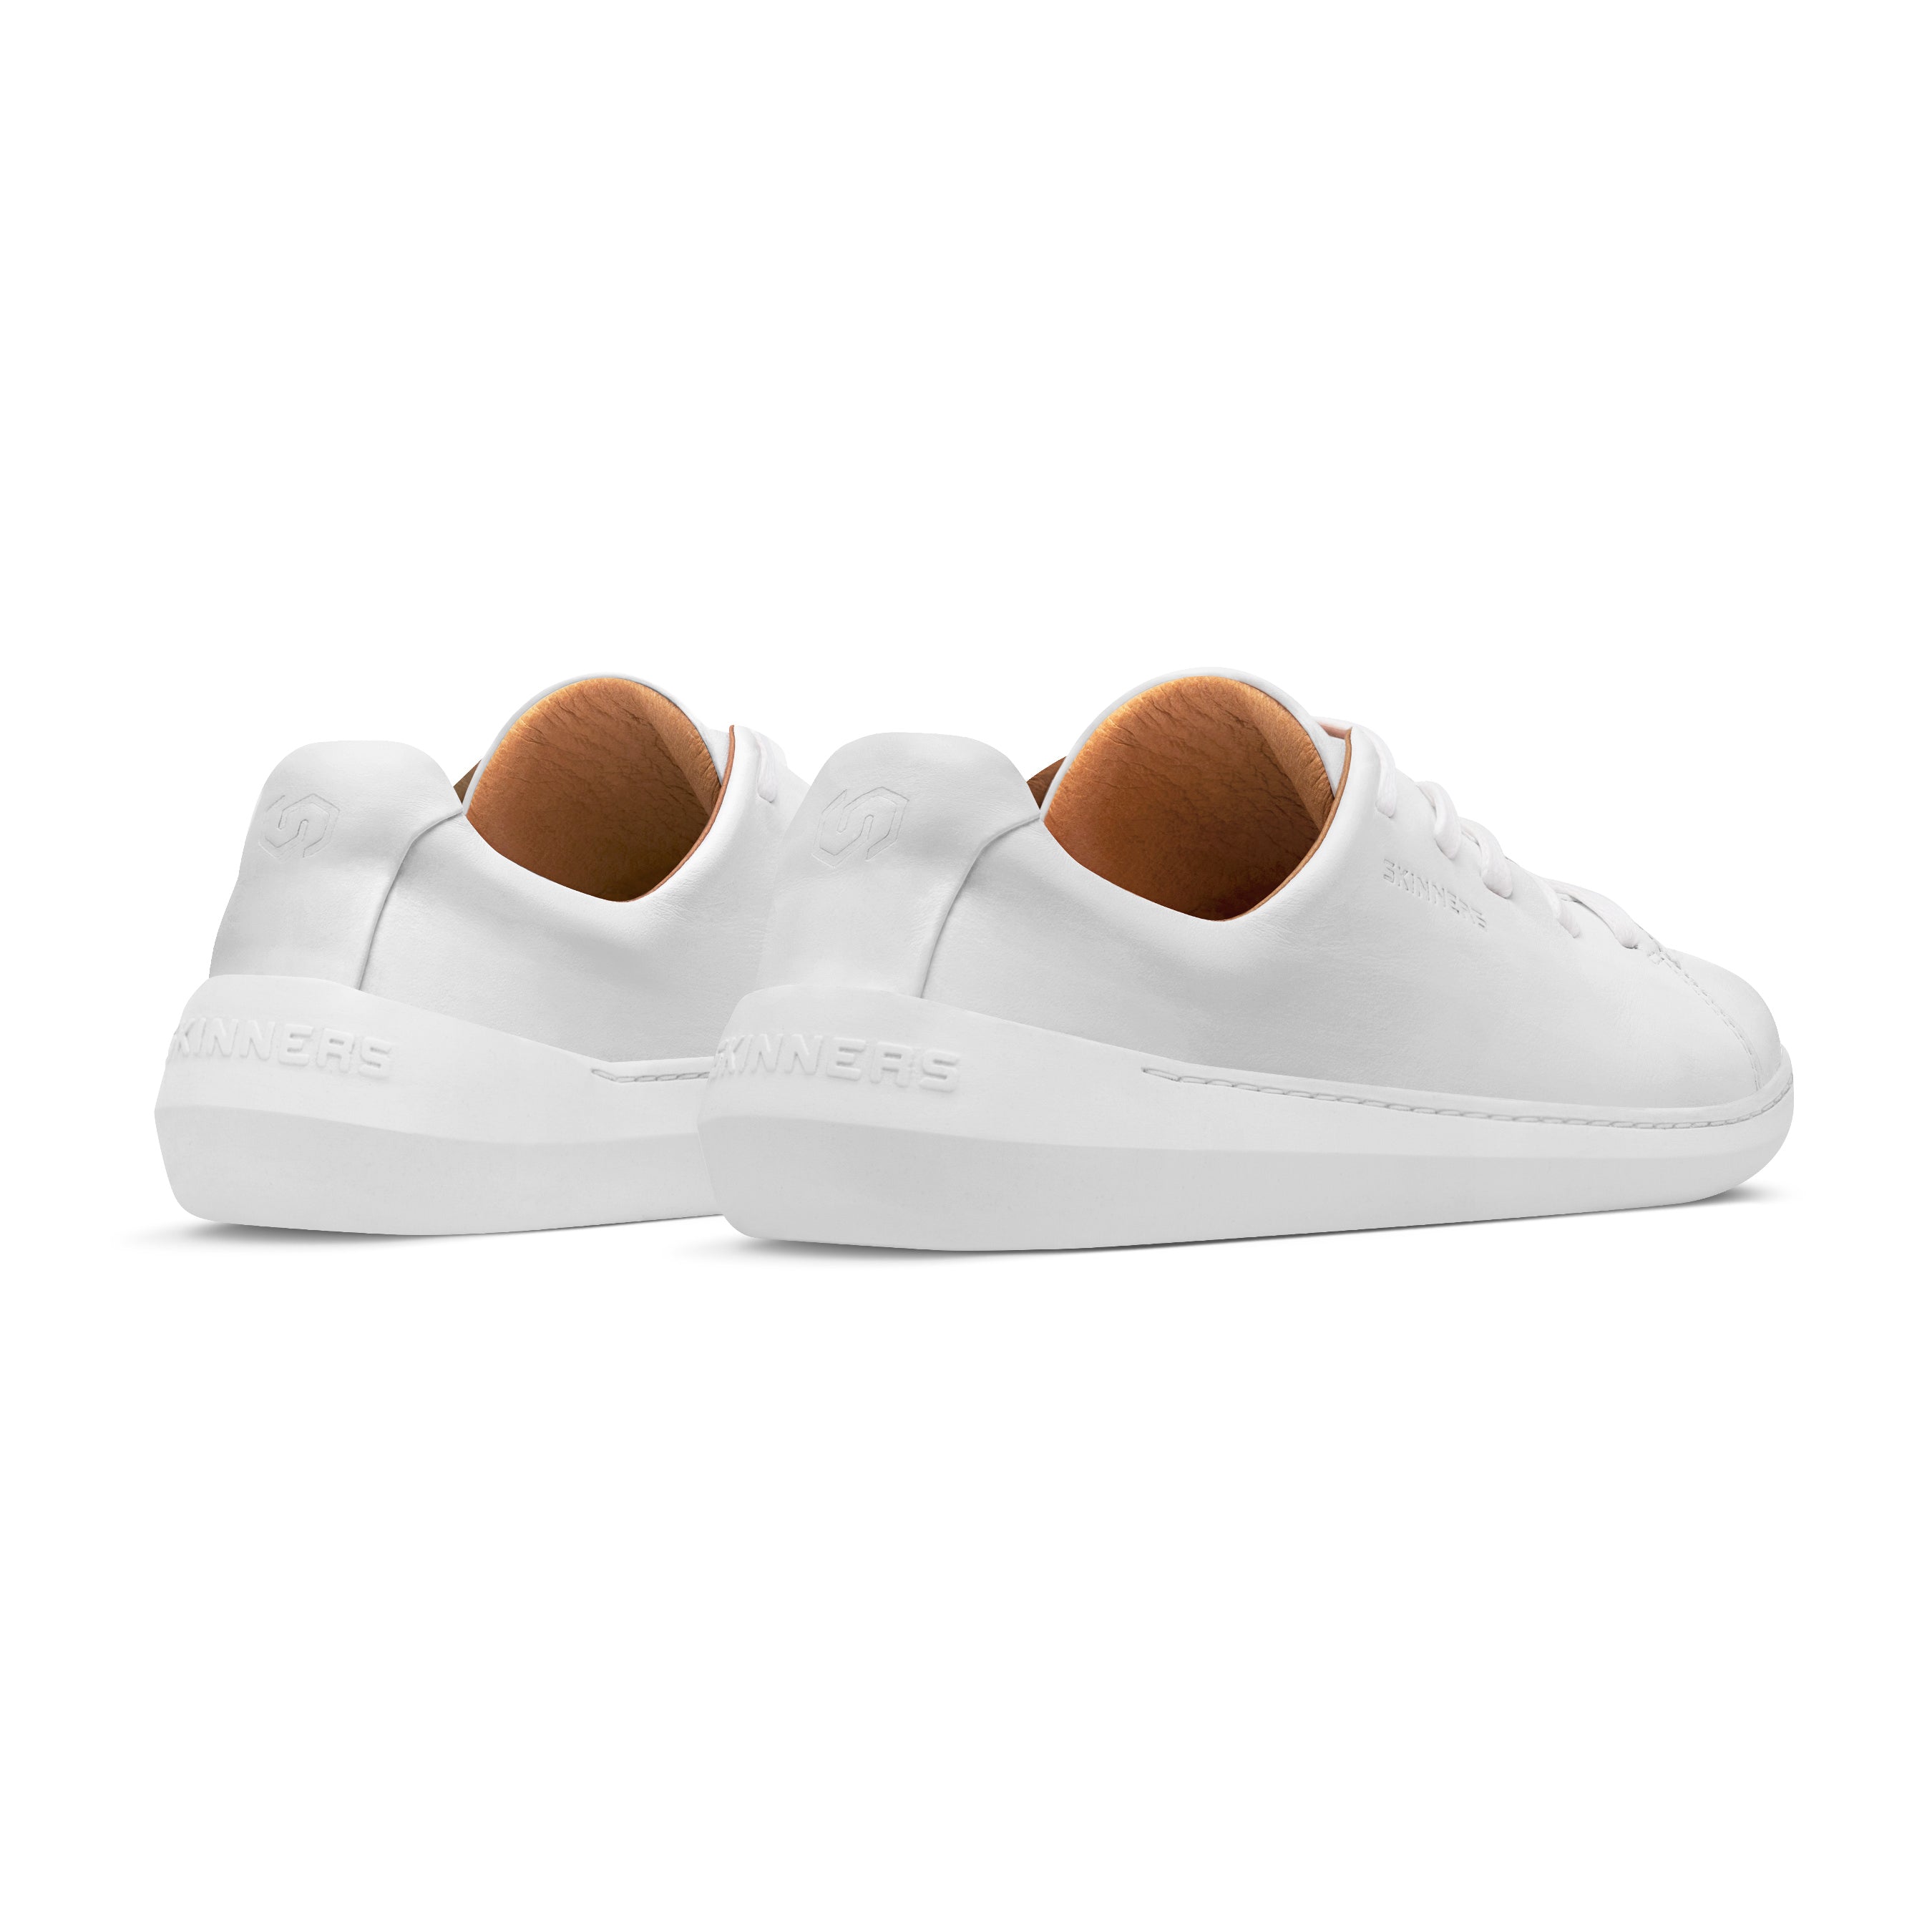 Mærkbare Walker barfods sneakers til kvinder og mænd i farven white / white, bagfra